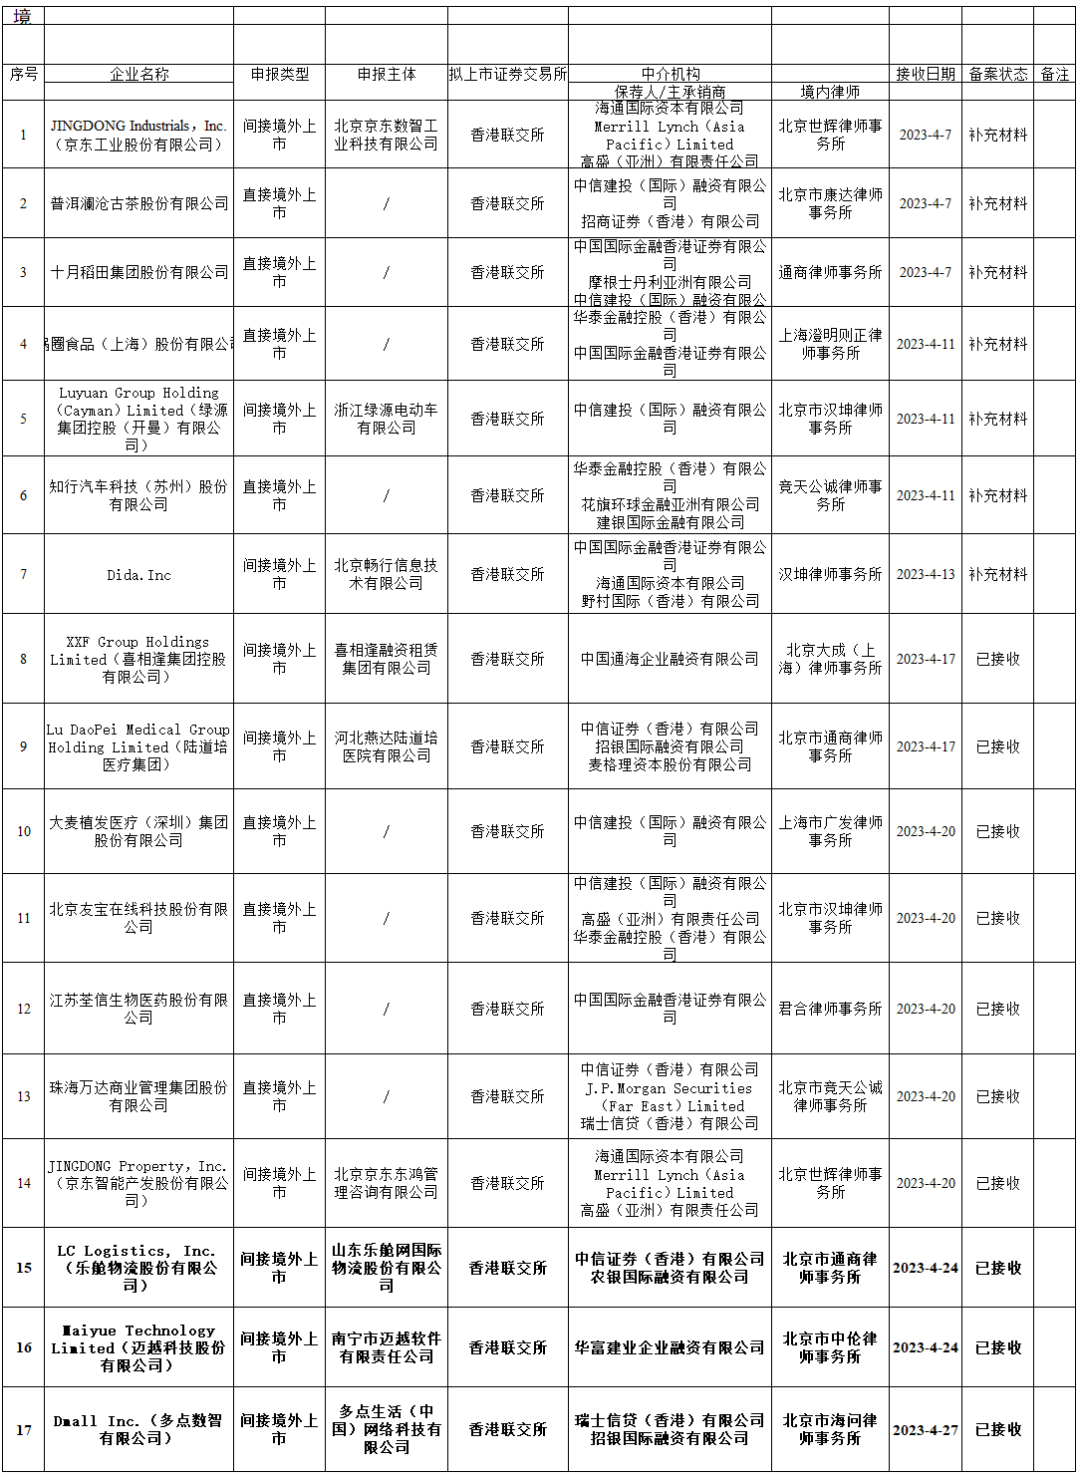 多点Dmall、乐舱物流、迈越科技等3家拟香港IPO上市公司在中国证监会备案(2023年4月27日)